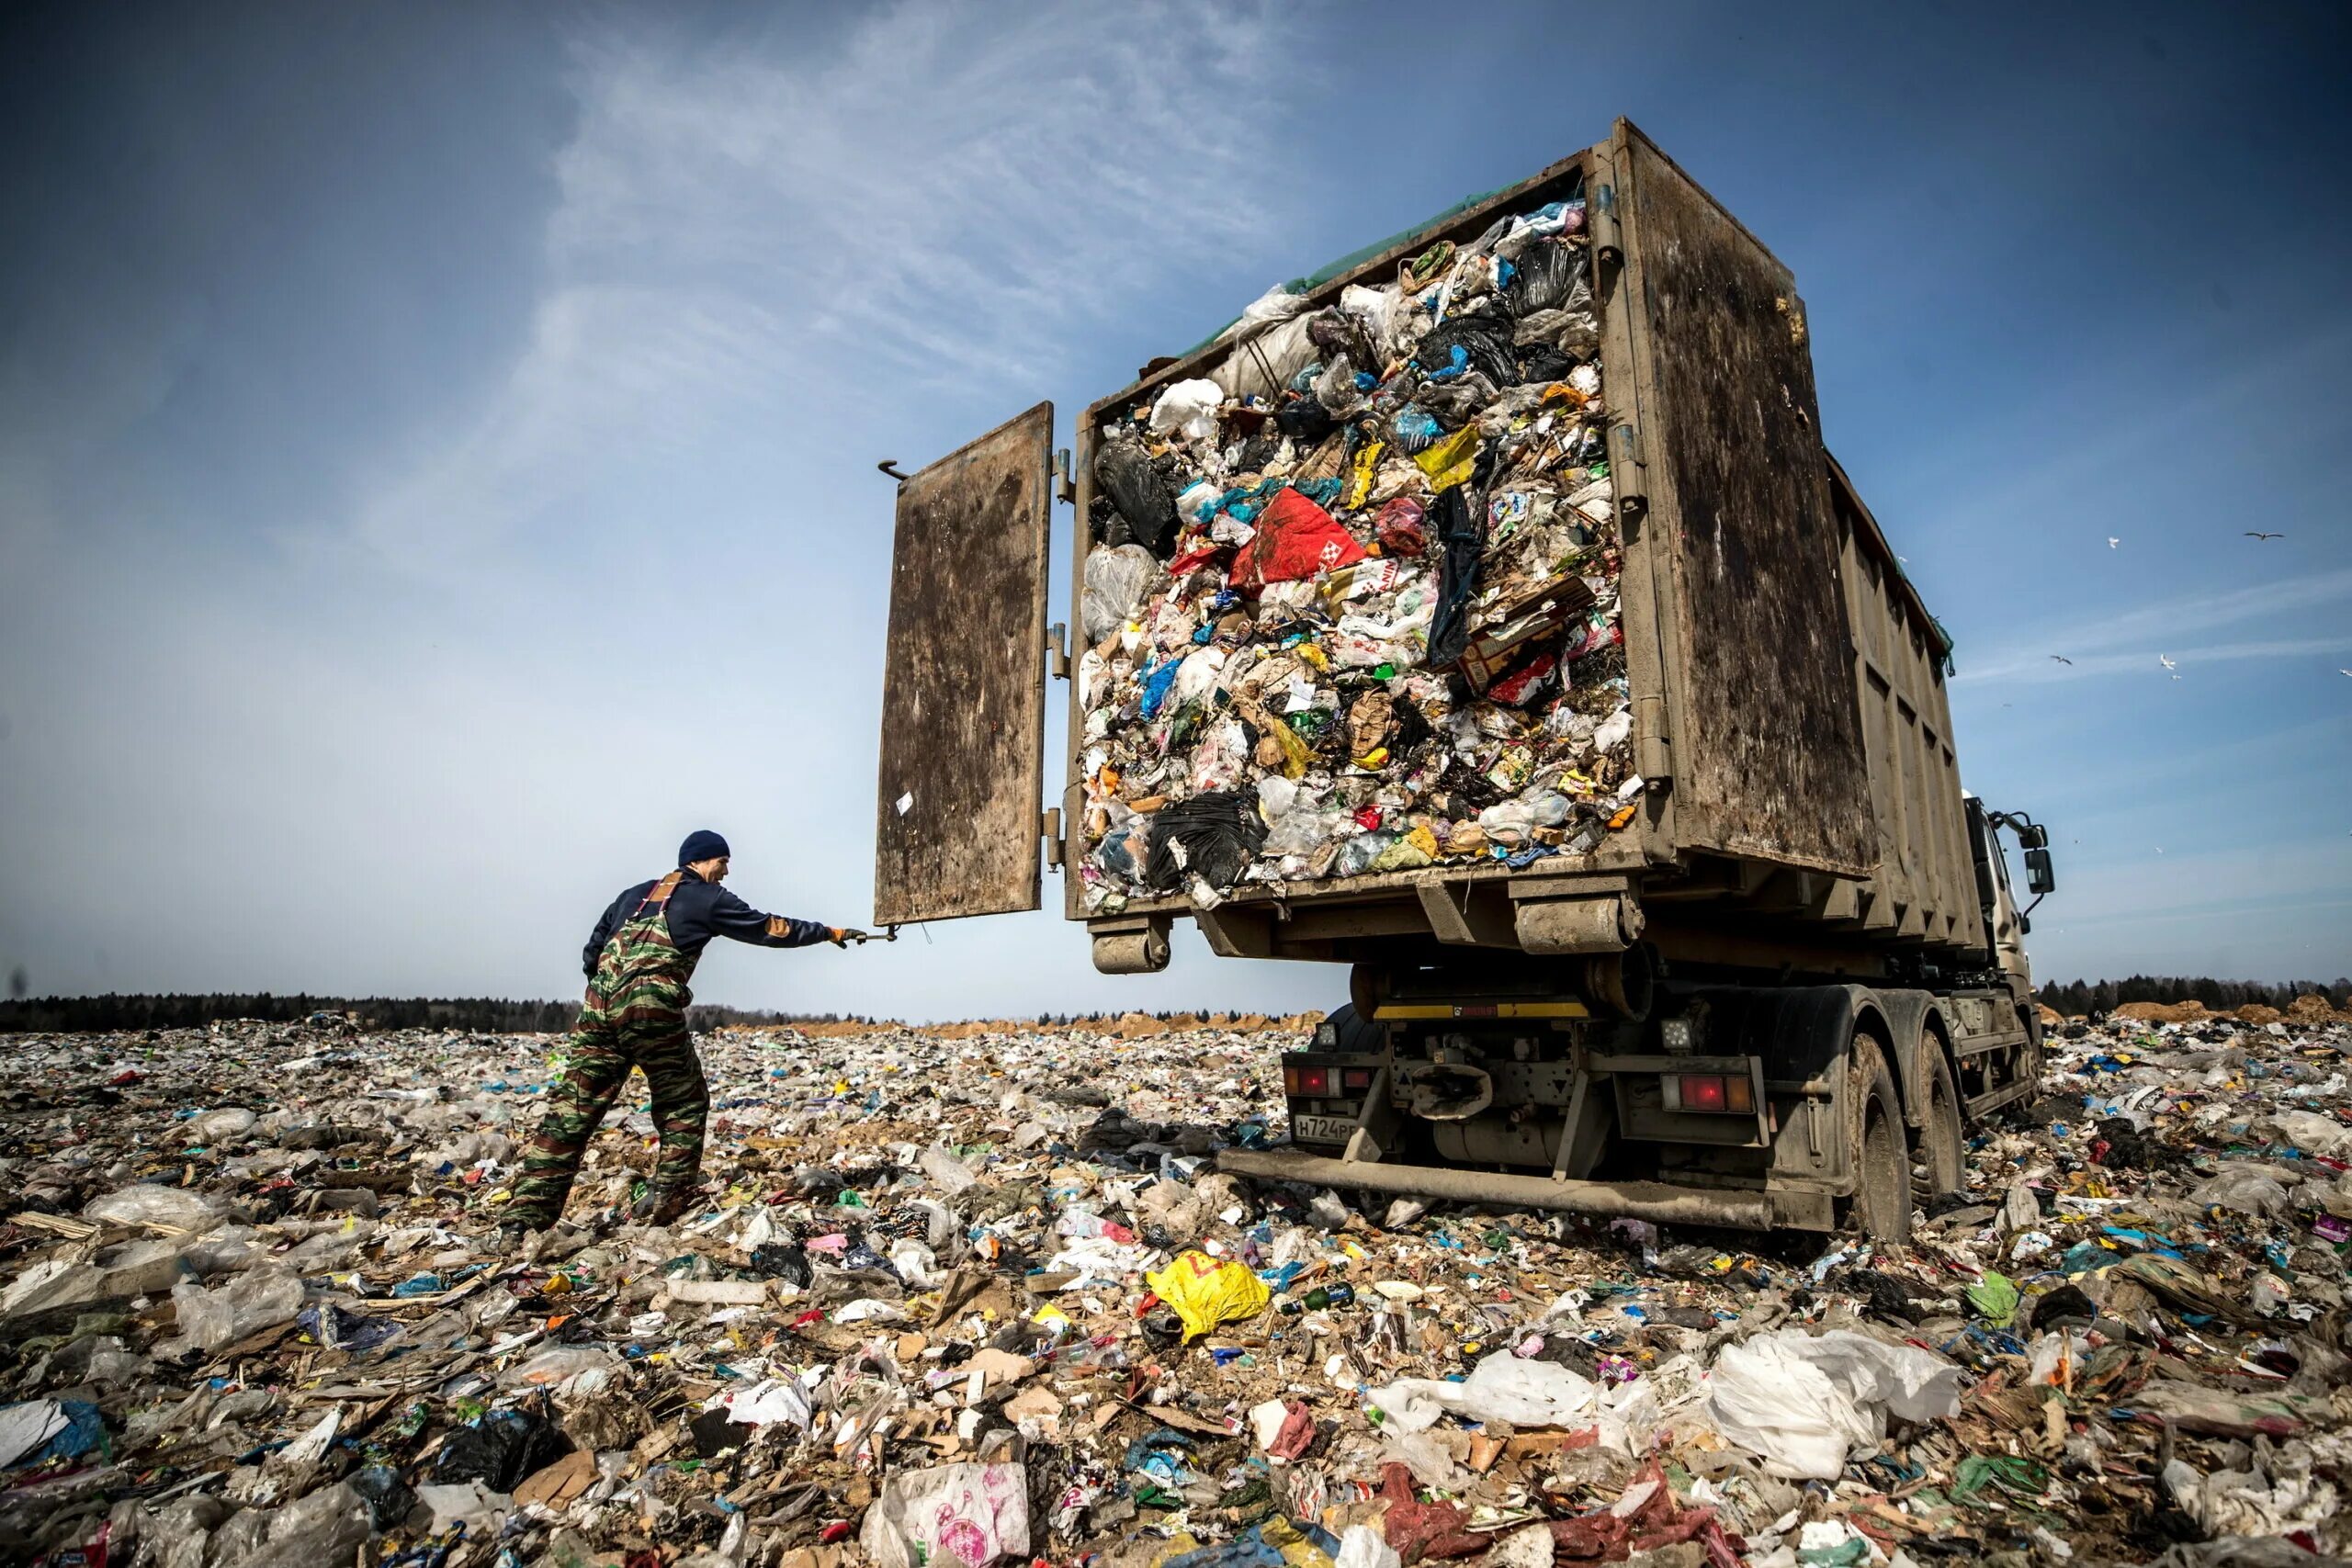 Переработка свалки. Самый большой полигон ТБО В России. Мусорная свалка. Утилизация бытовых и промышленных отходов. Мусорные отходы.